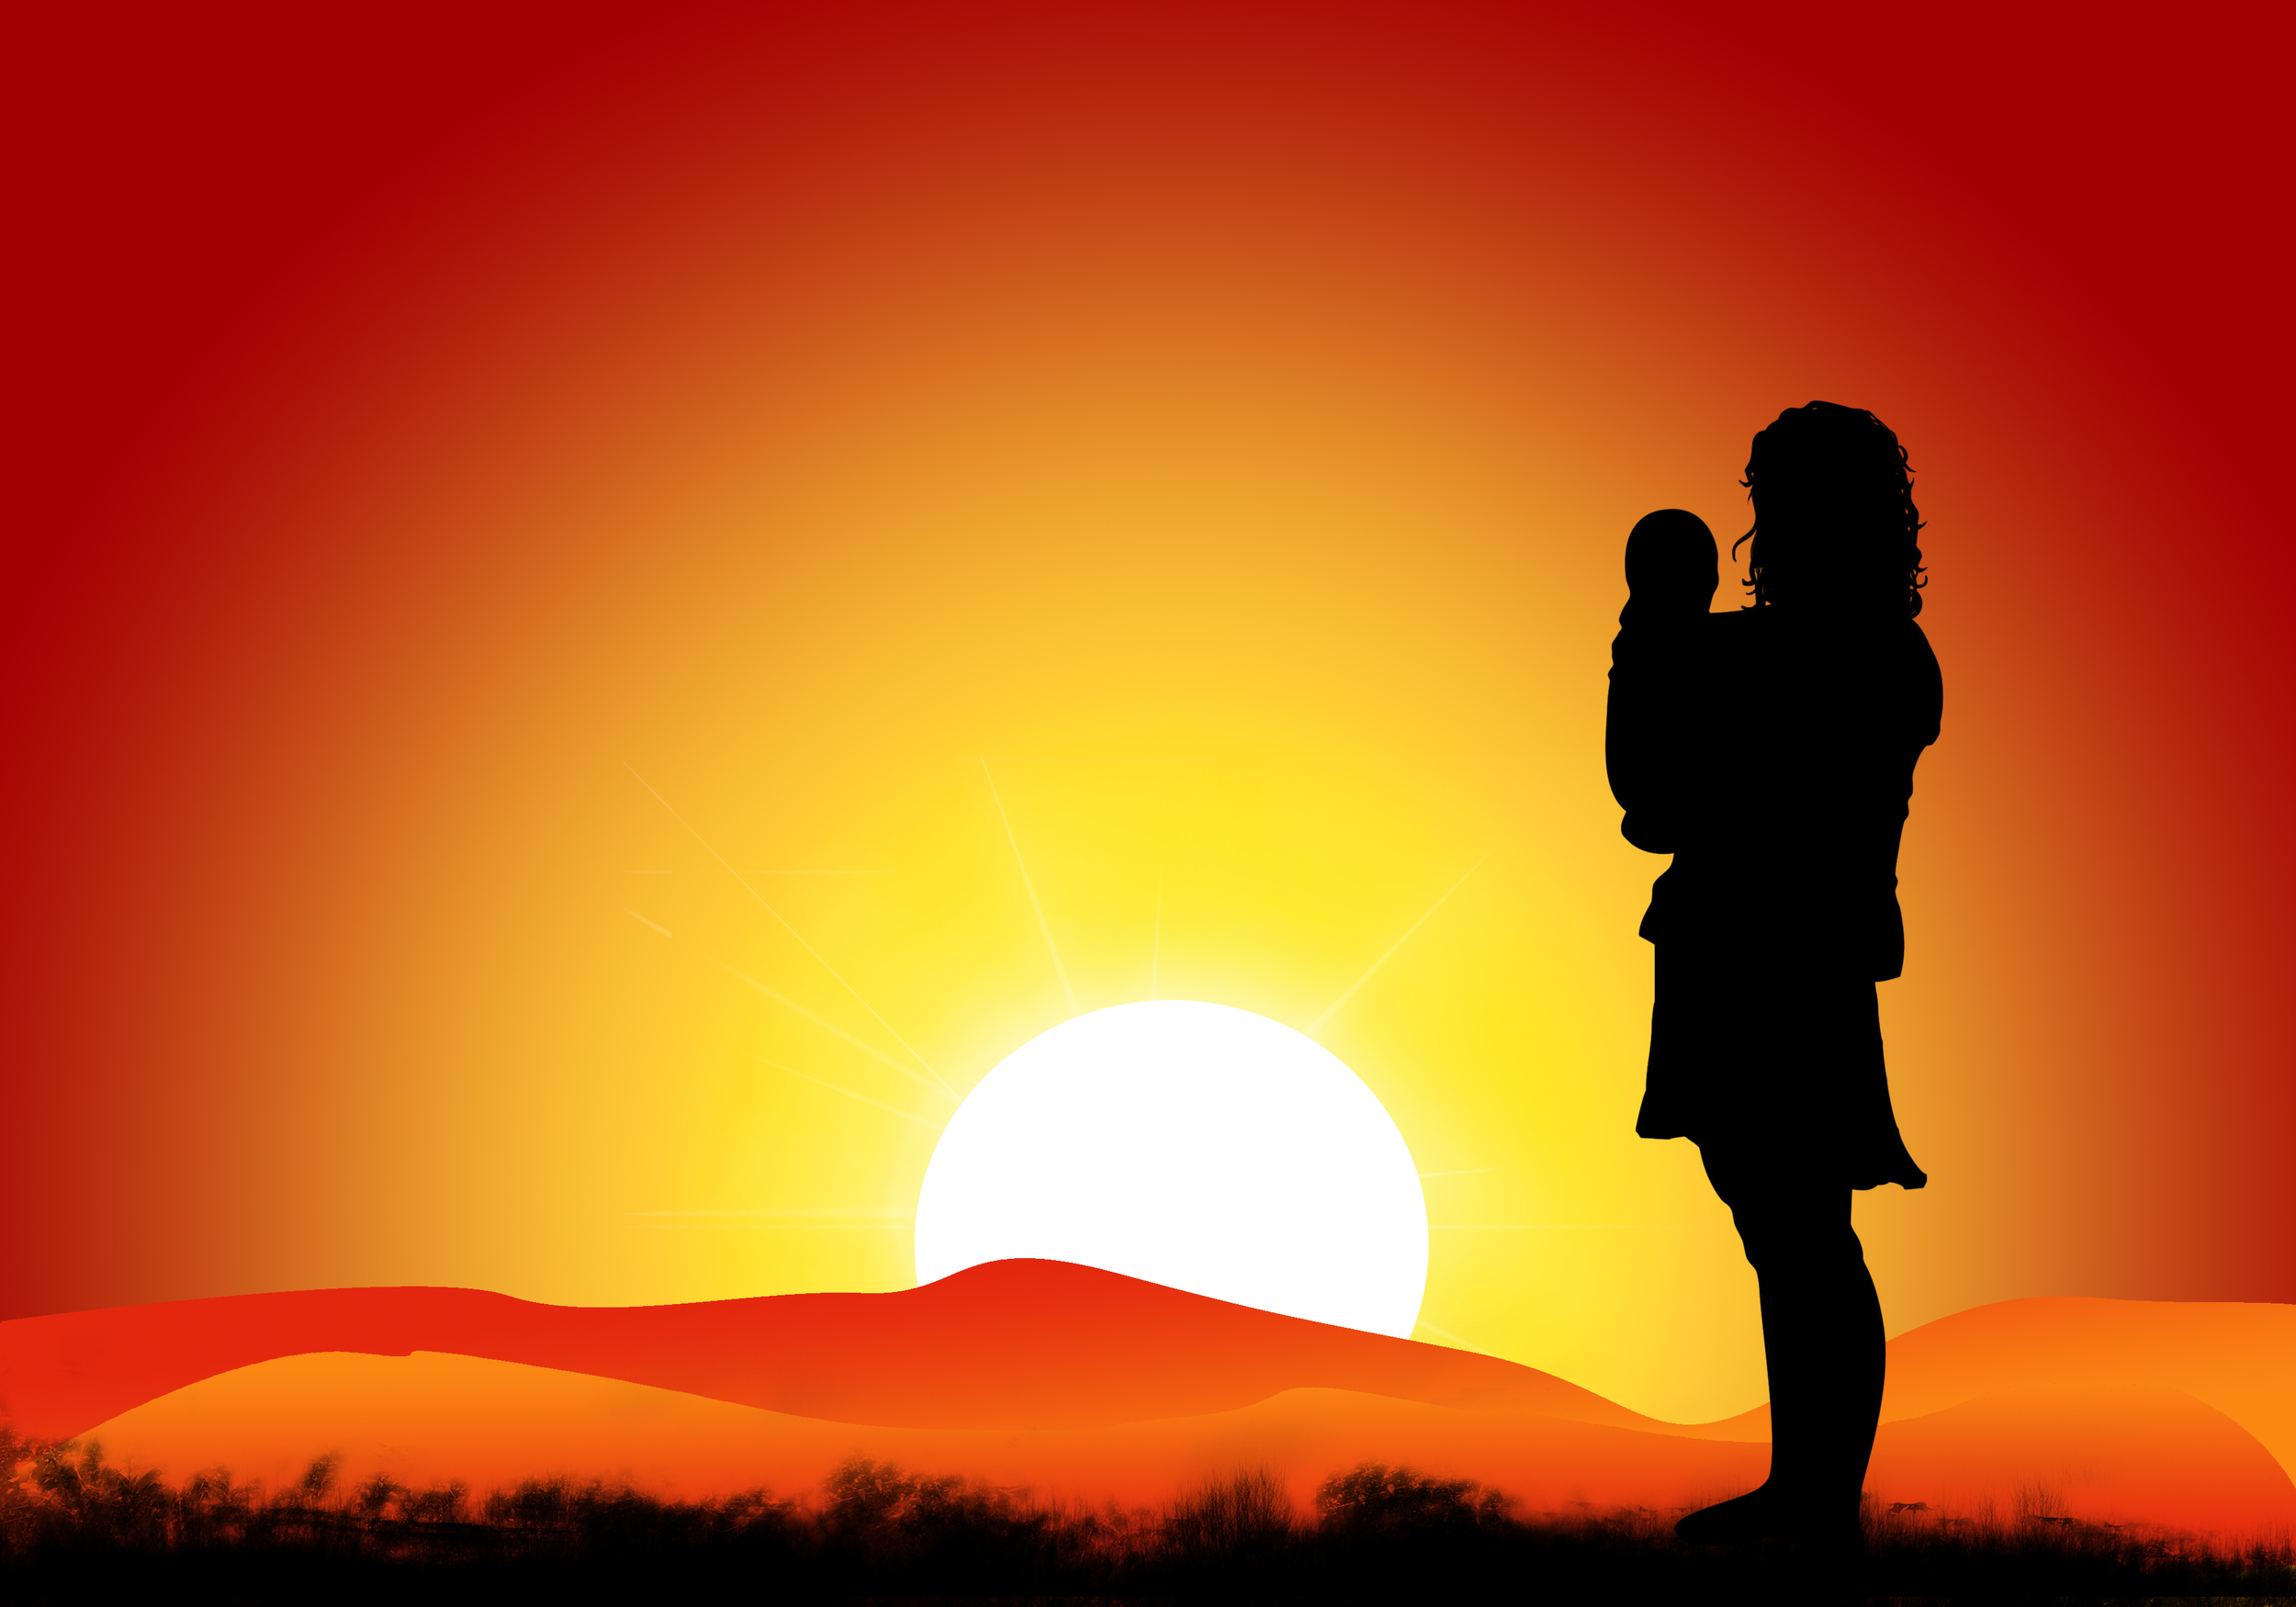 mom in sunset illustration.jpg